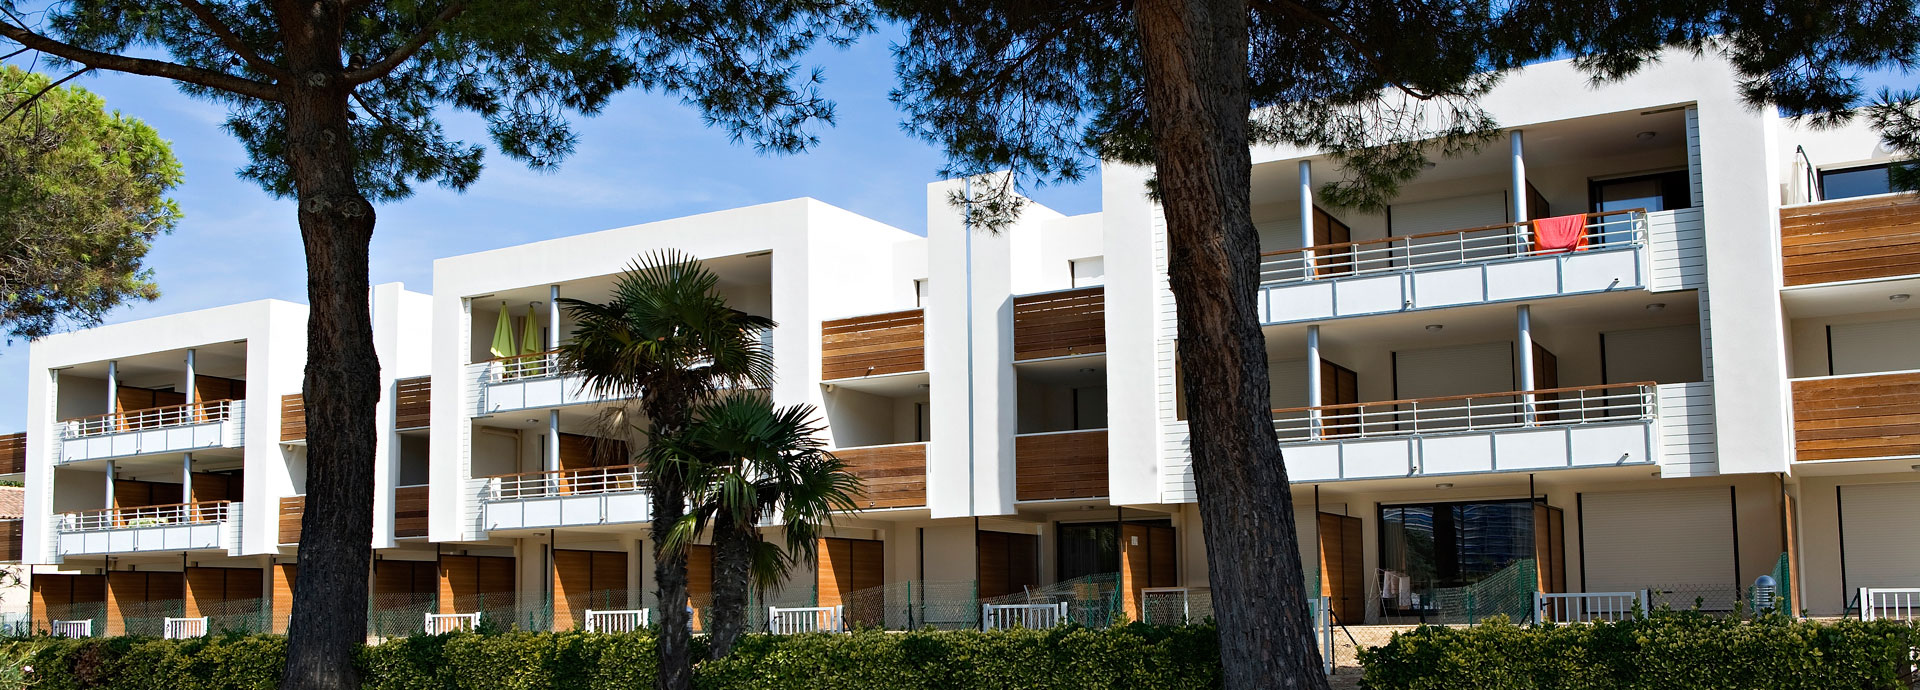 location vacances à Cannes-Mandelieu la Napoule : résidence Carré Marine